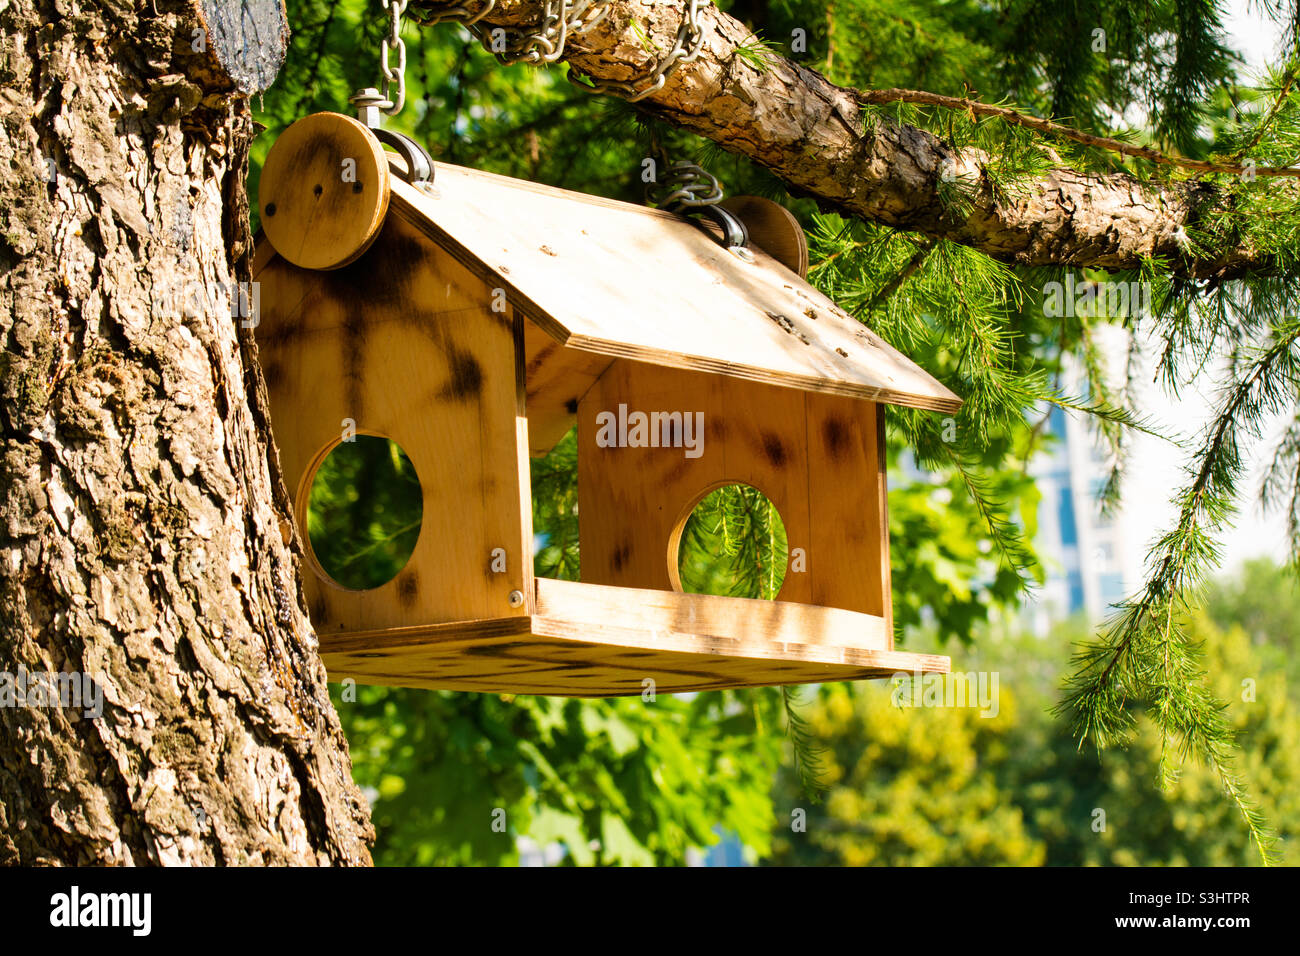 Hausgemachter Vogelfutterhäuschen aus Holz für Vögel und Eichhörnchen, die an einem warmen, sonnigen Tag an einem Baum hängen Stockfoto